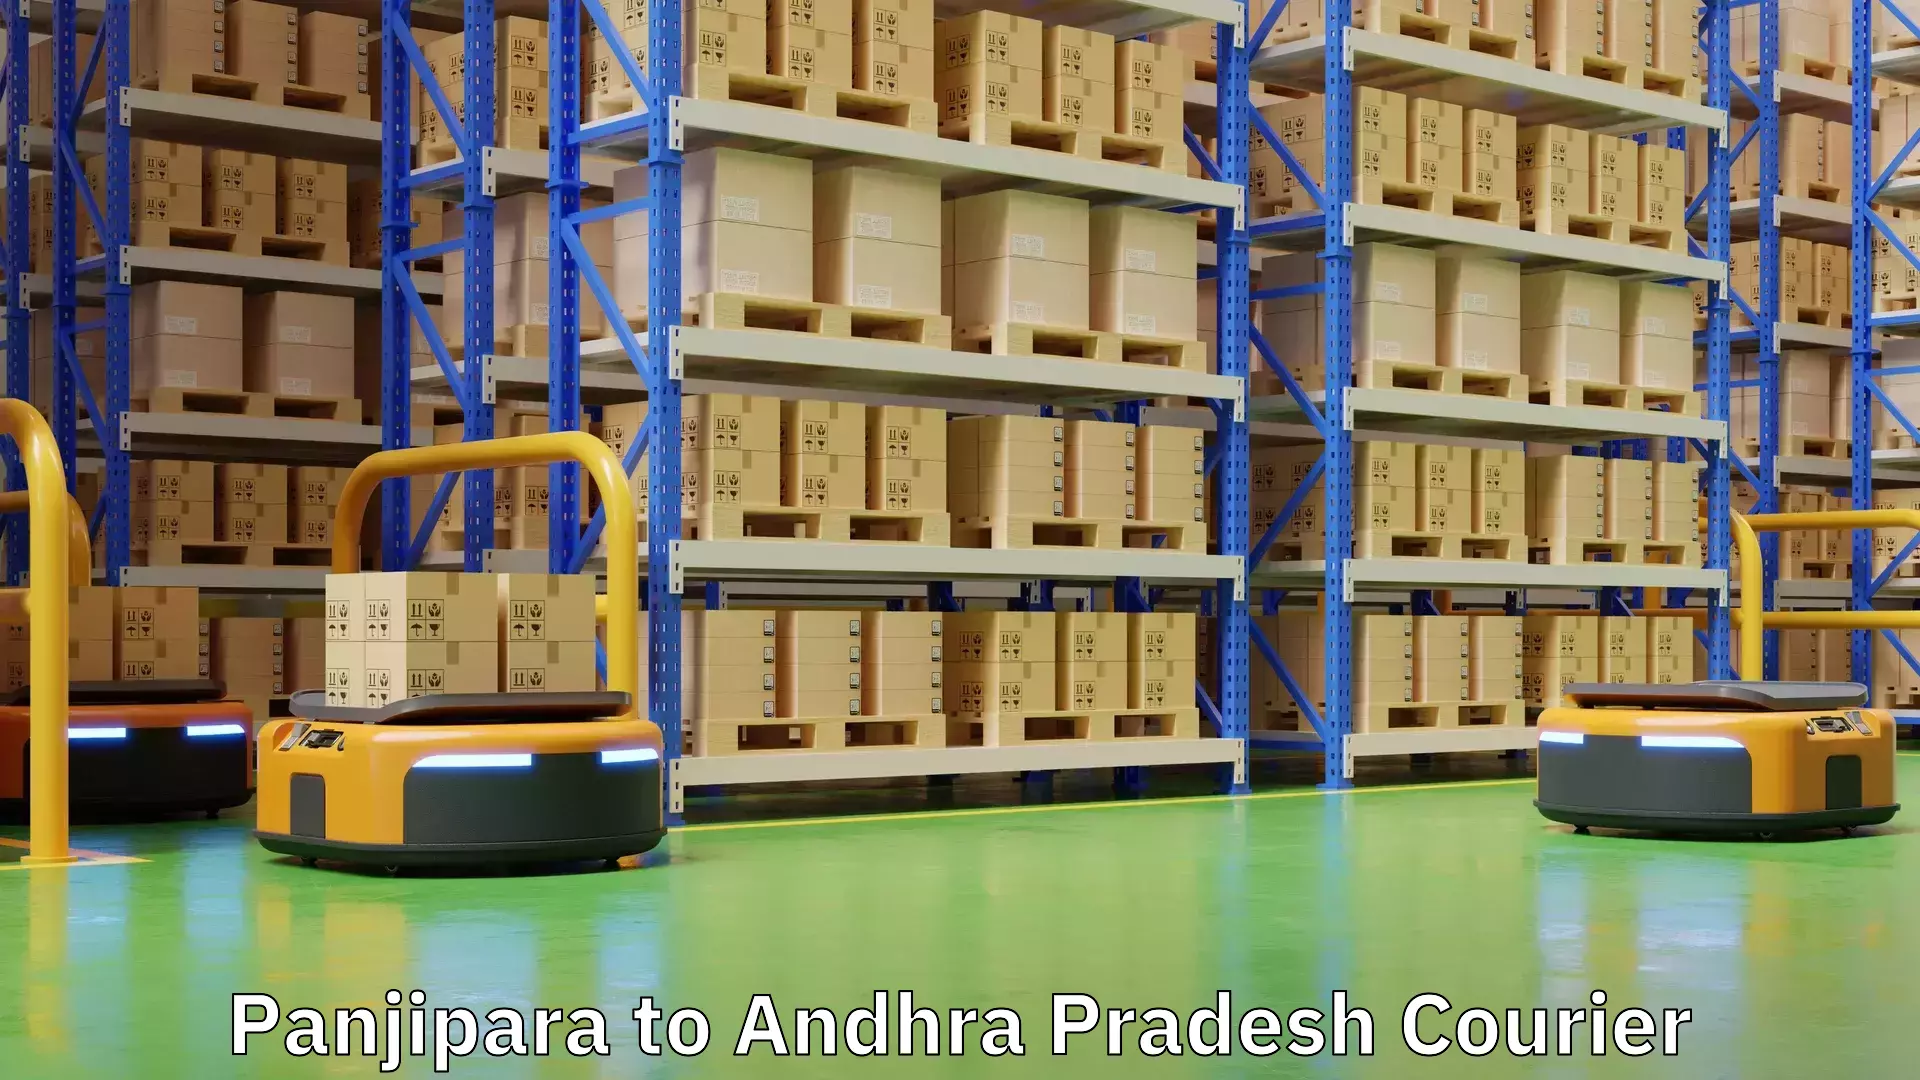 Premium courier solutions Panjipara to Andhra Pradesh